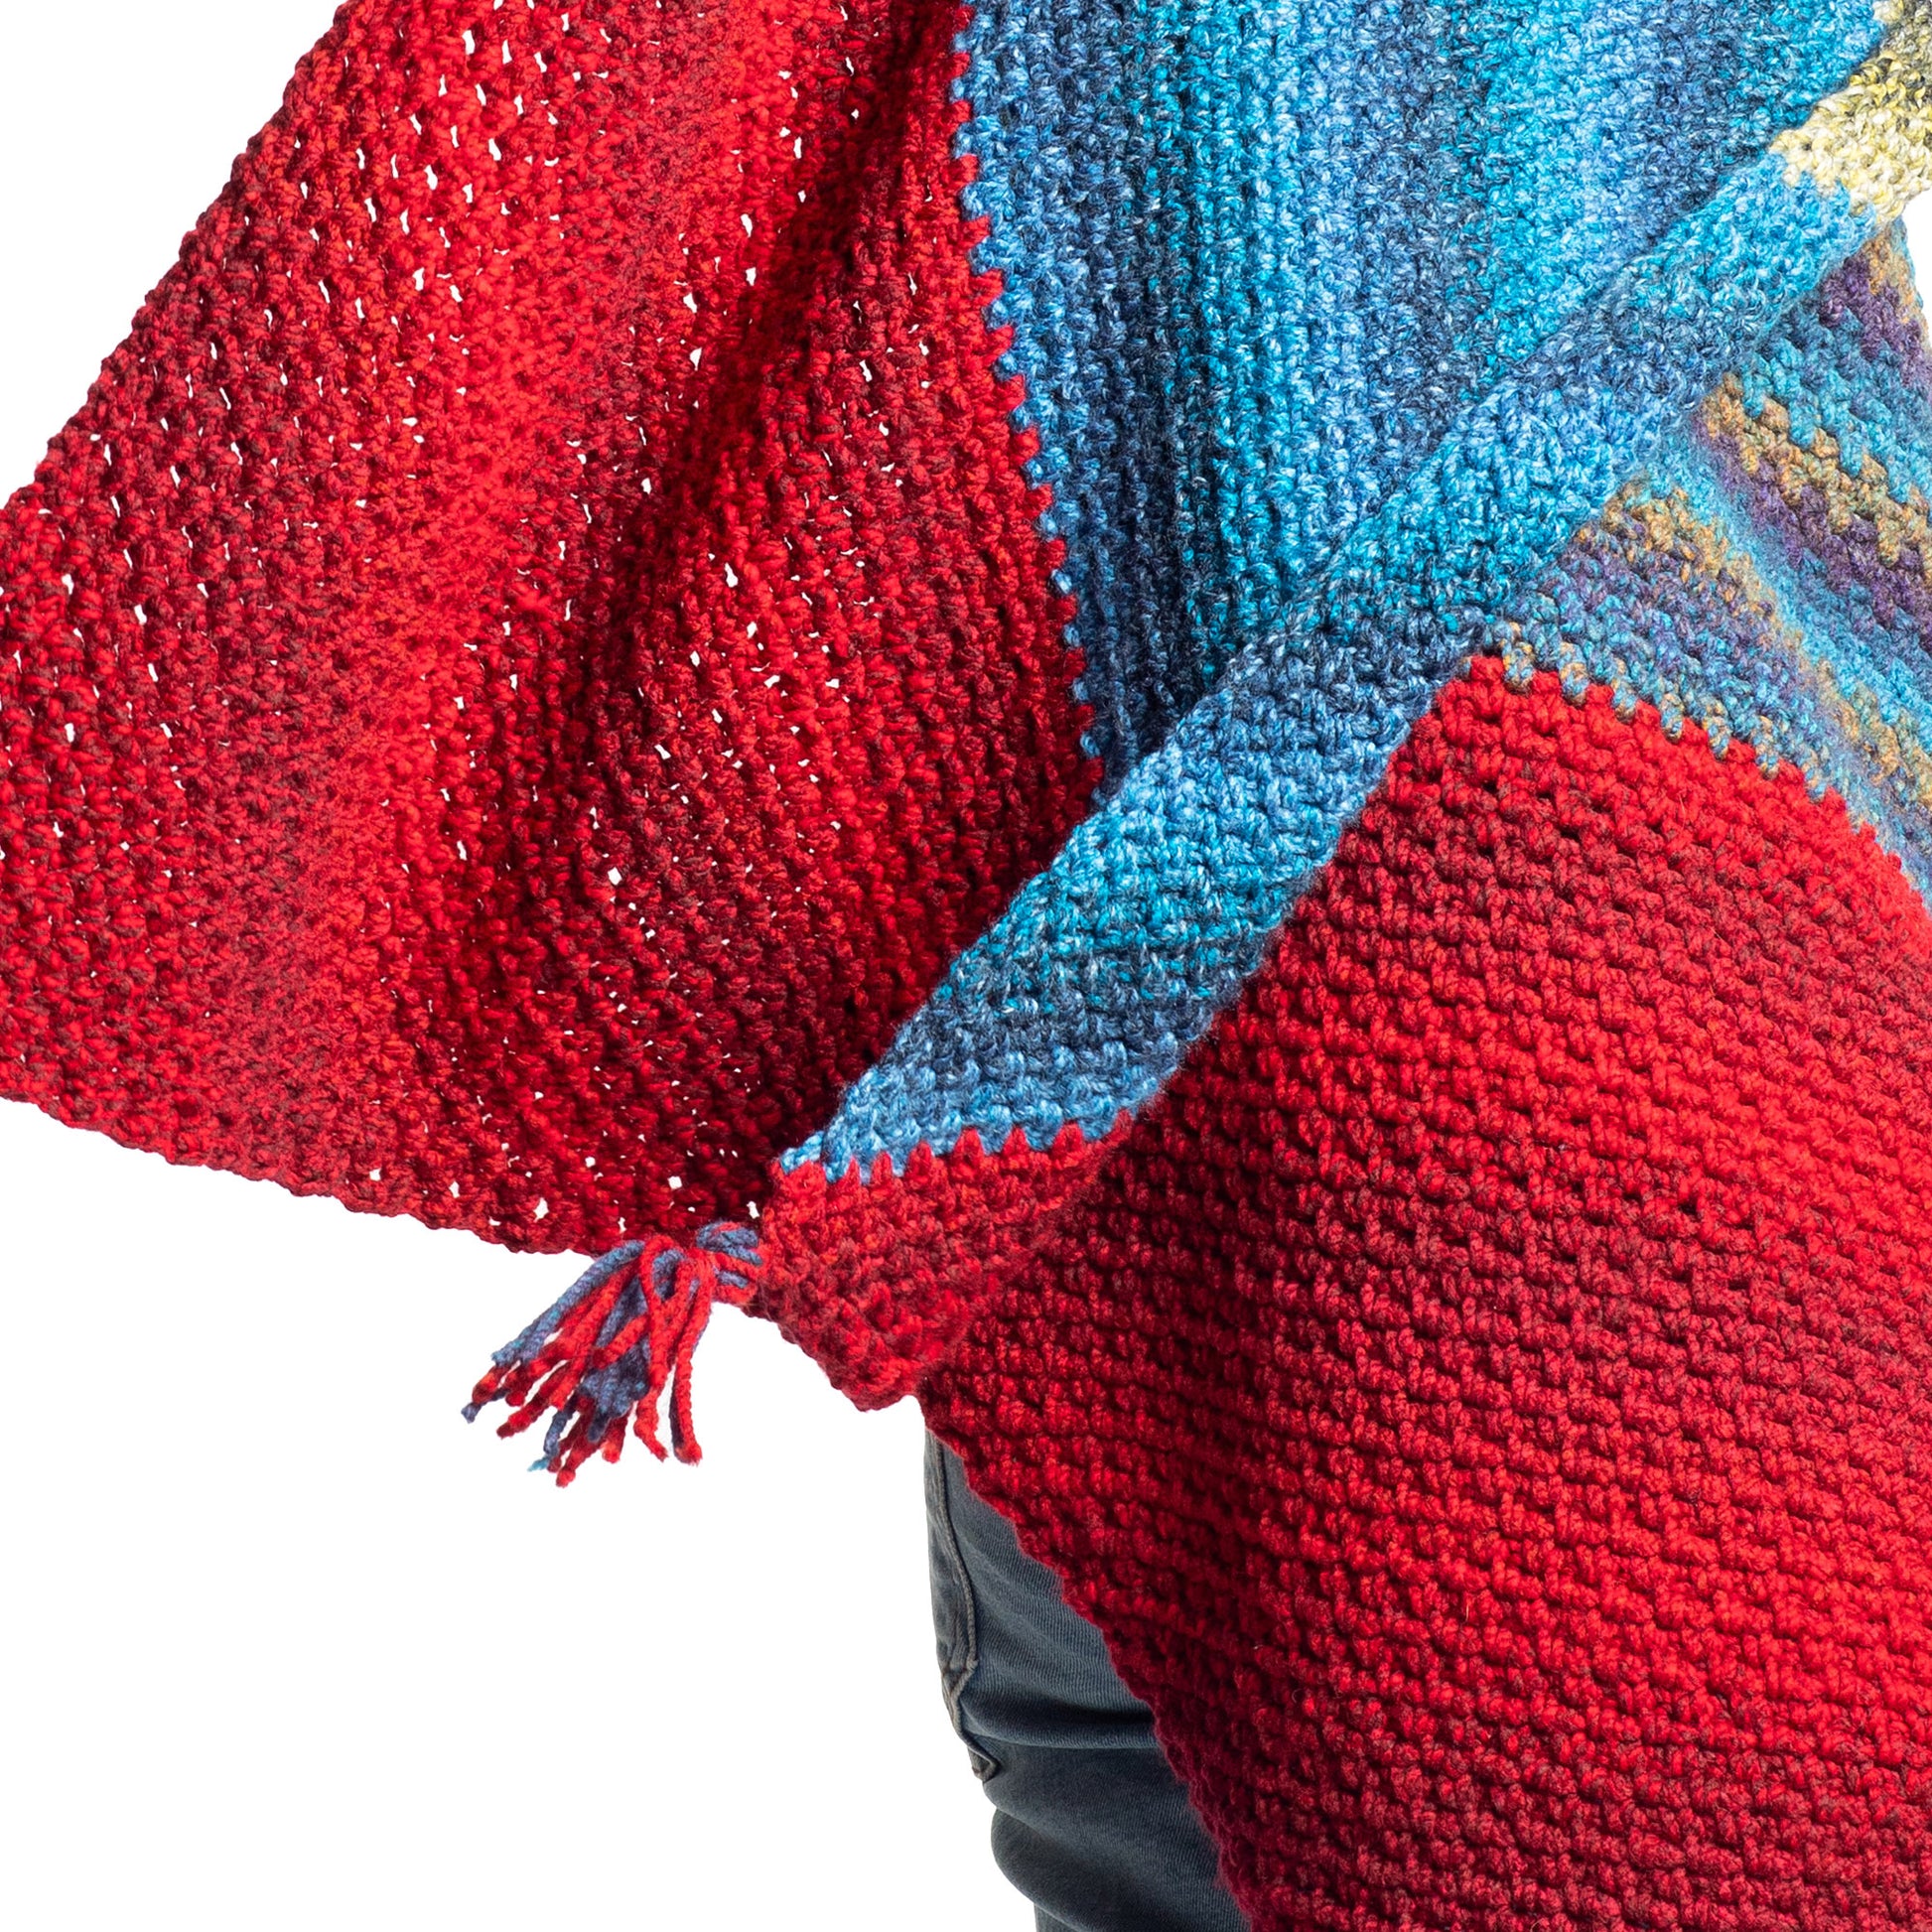 Free Bernat Crochet Wavelength Moss Stitch on a bias Shawl Pattern